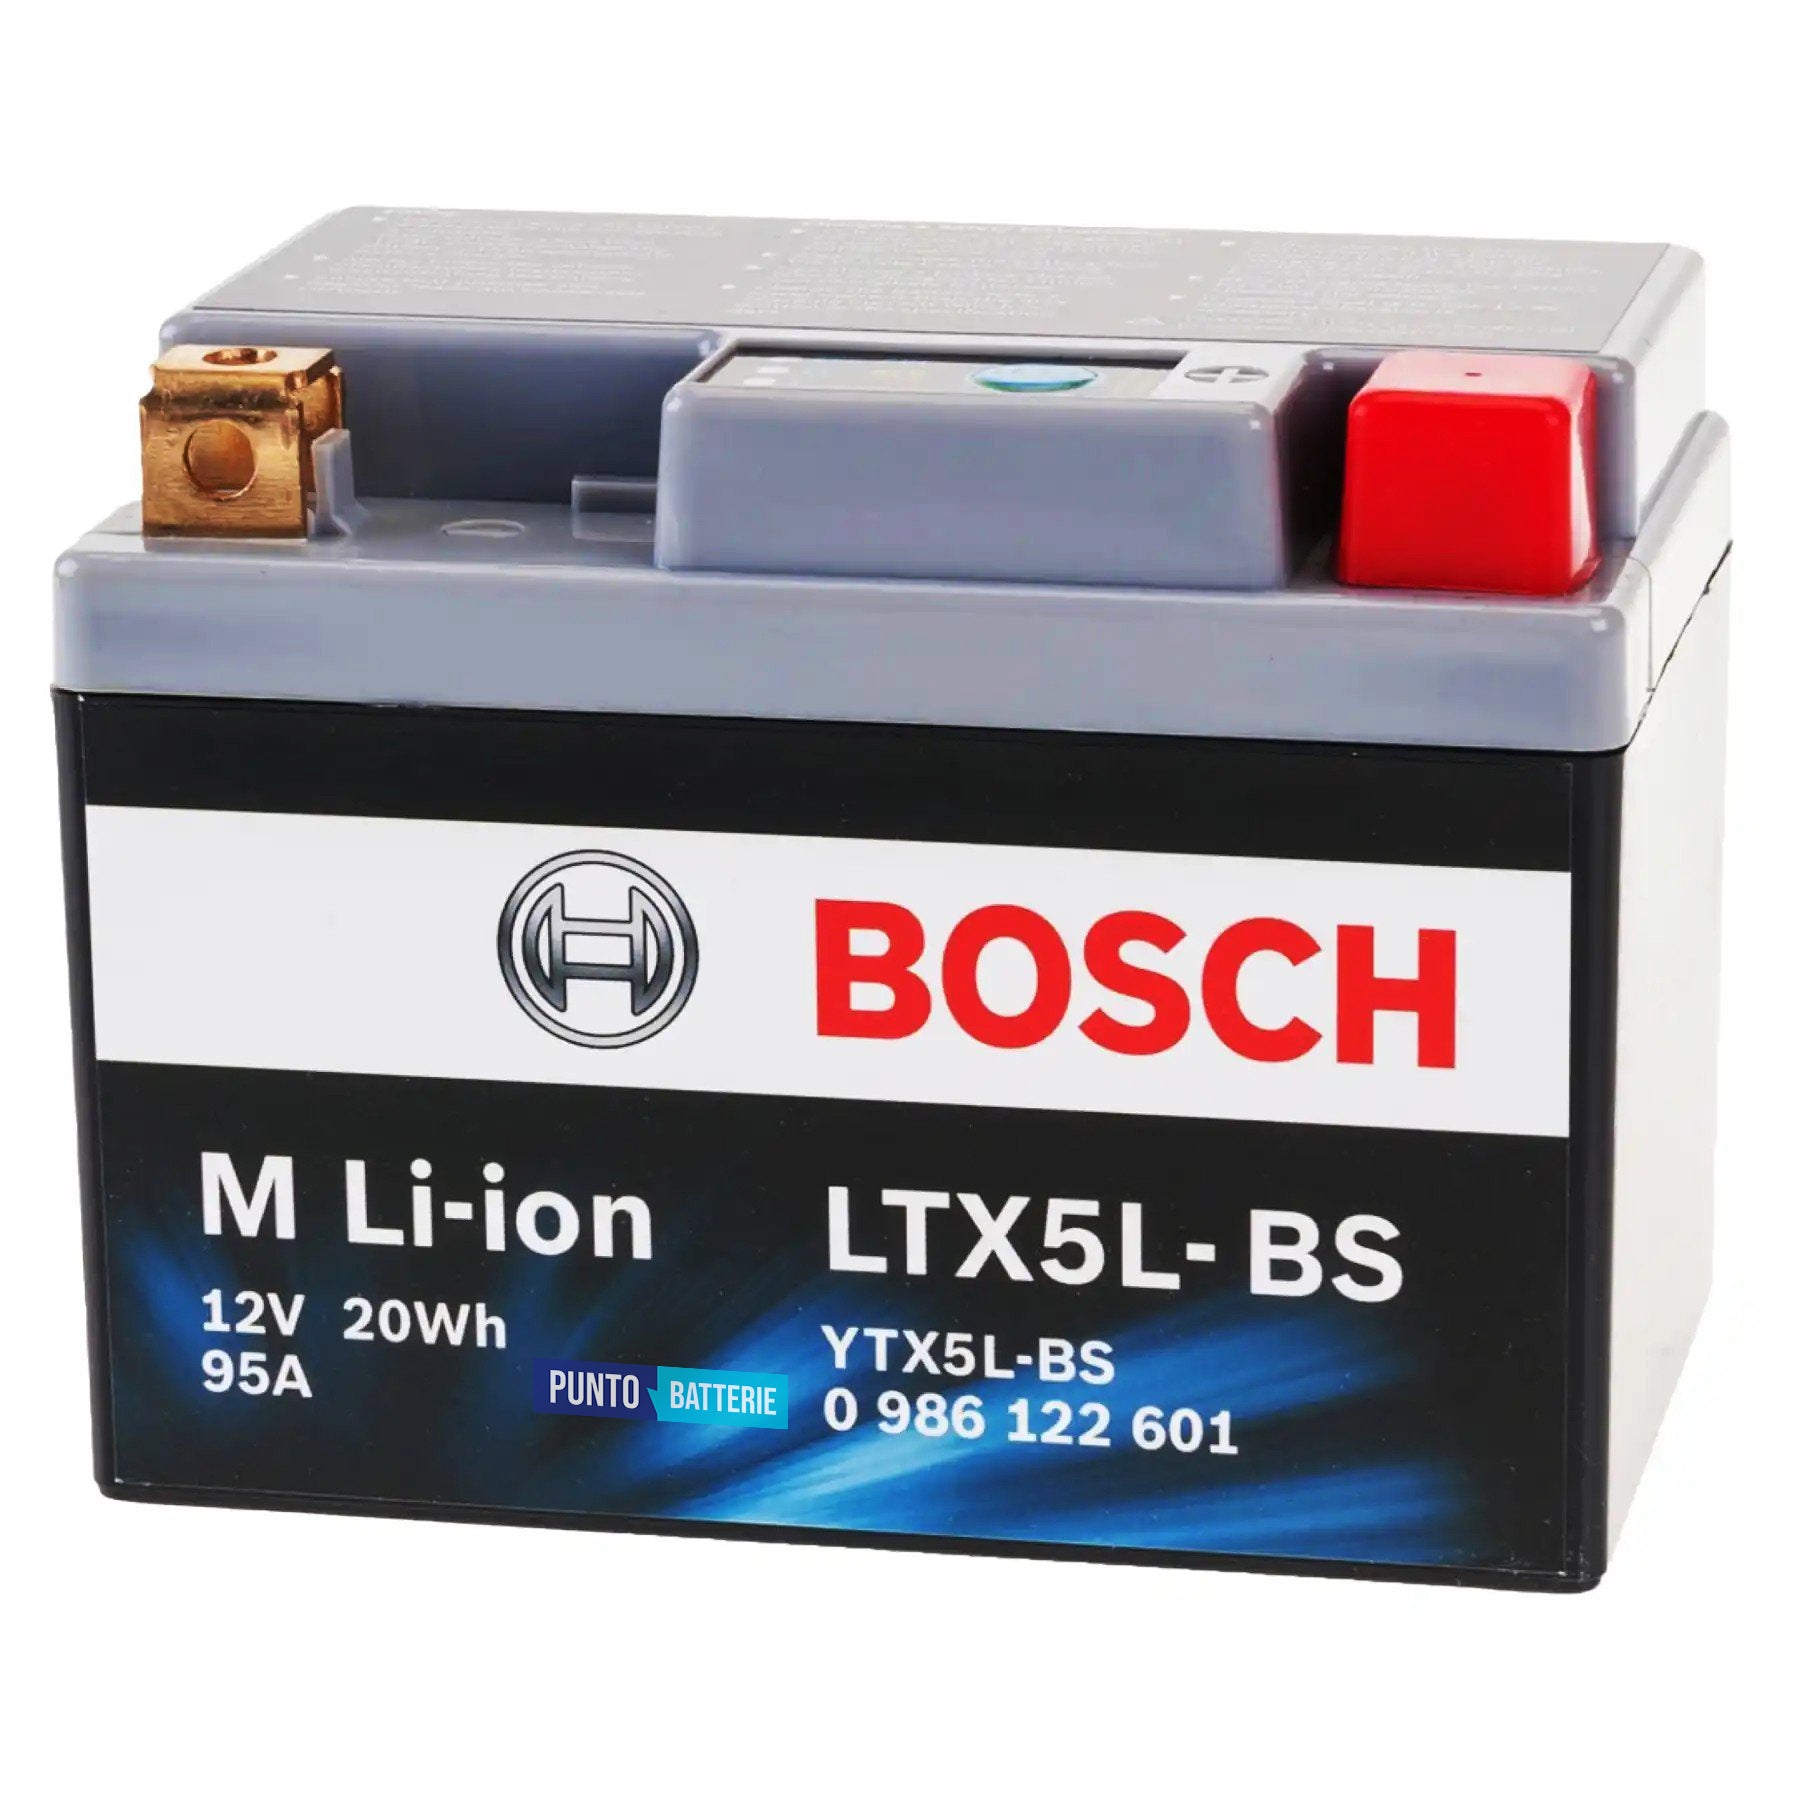 Batteria originale Bosch M Li-ion LTX5L-BS, dimensioni 150 x 87 x 143, polo positivo a destra, 12 volt, 1 amperora, 95 ampere. Batteria per moto, scooter e powersport.